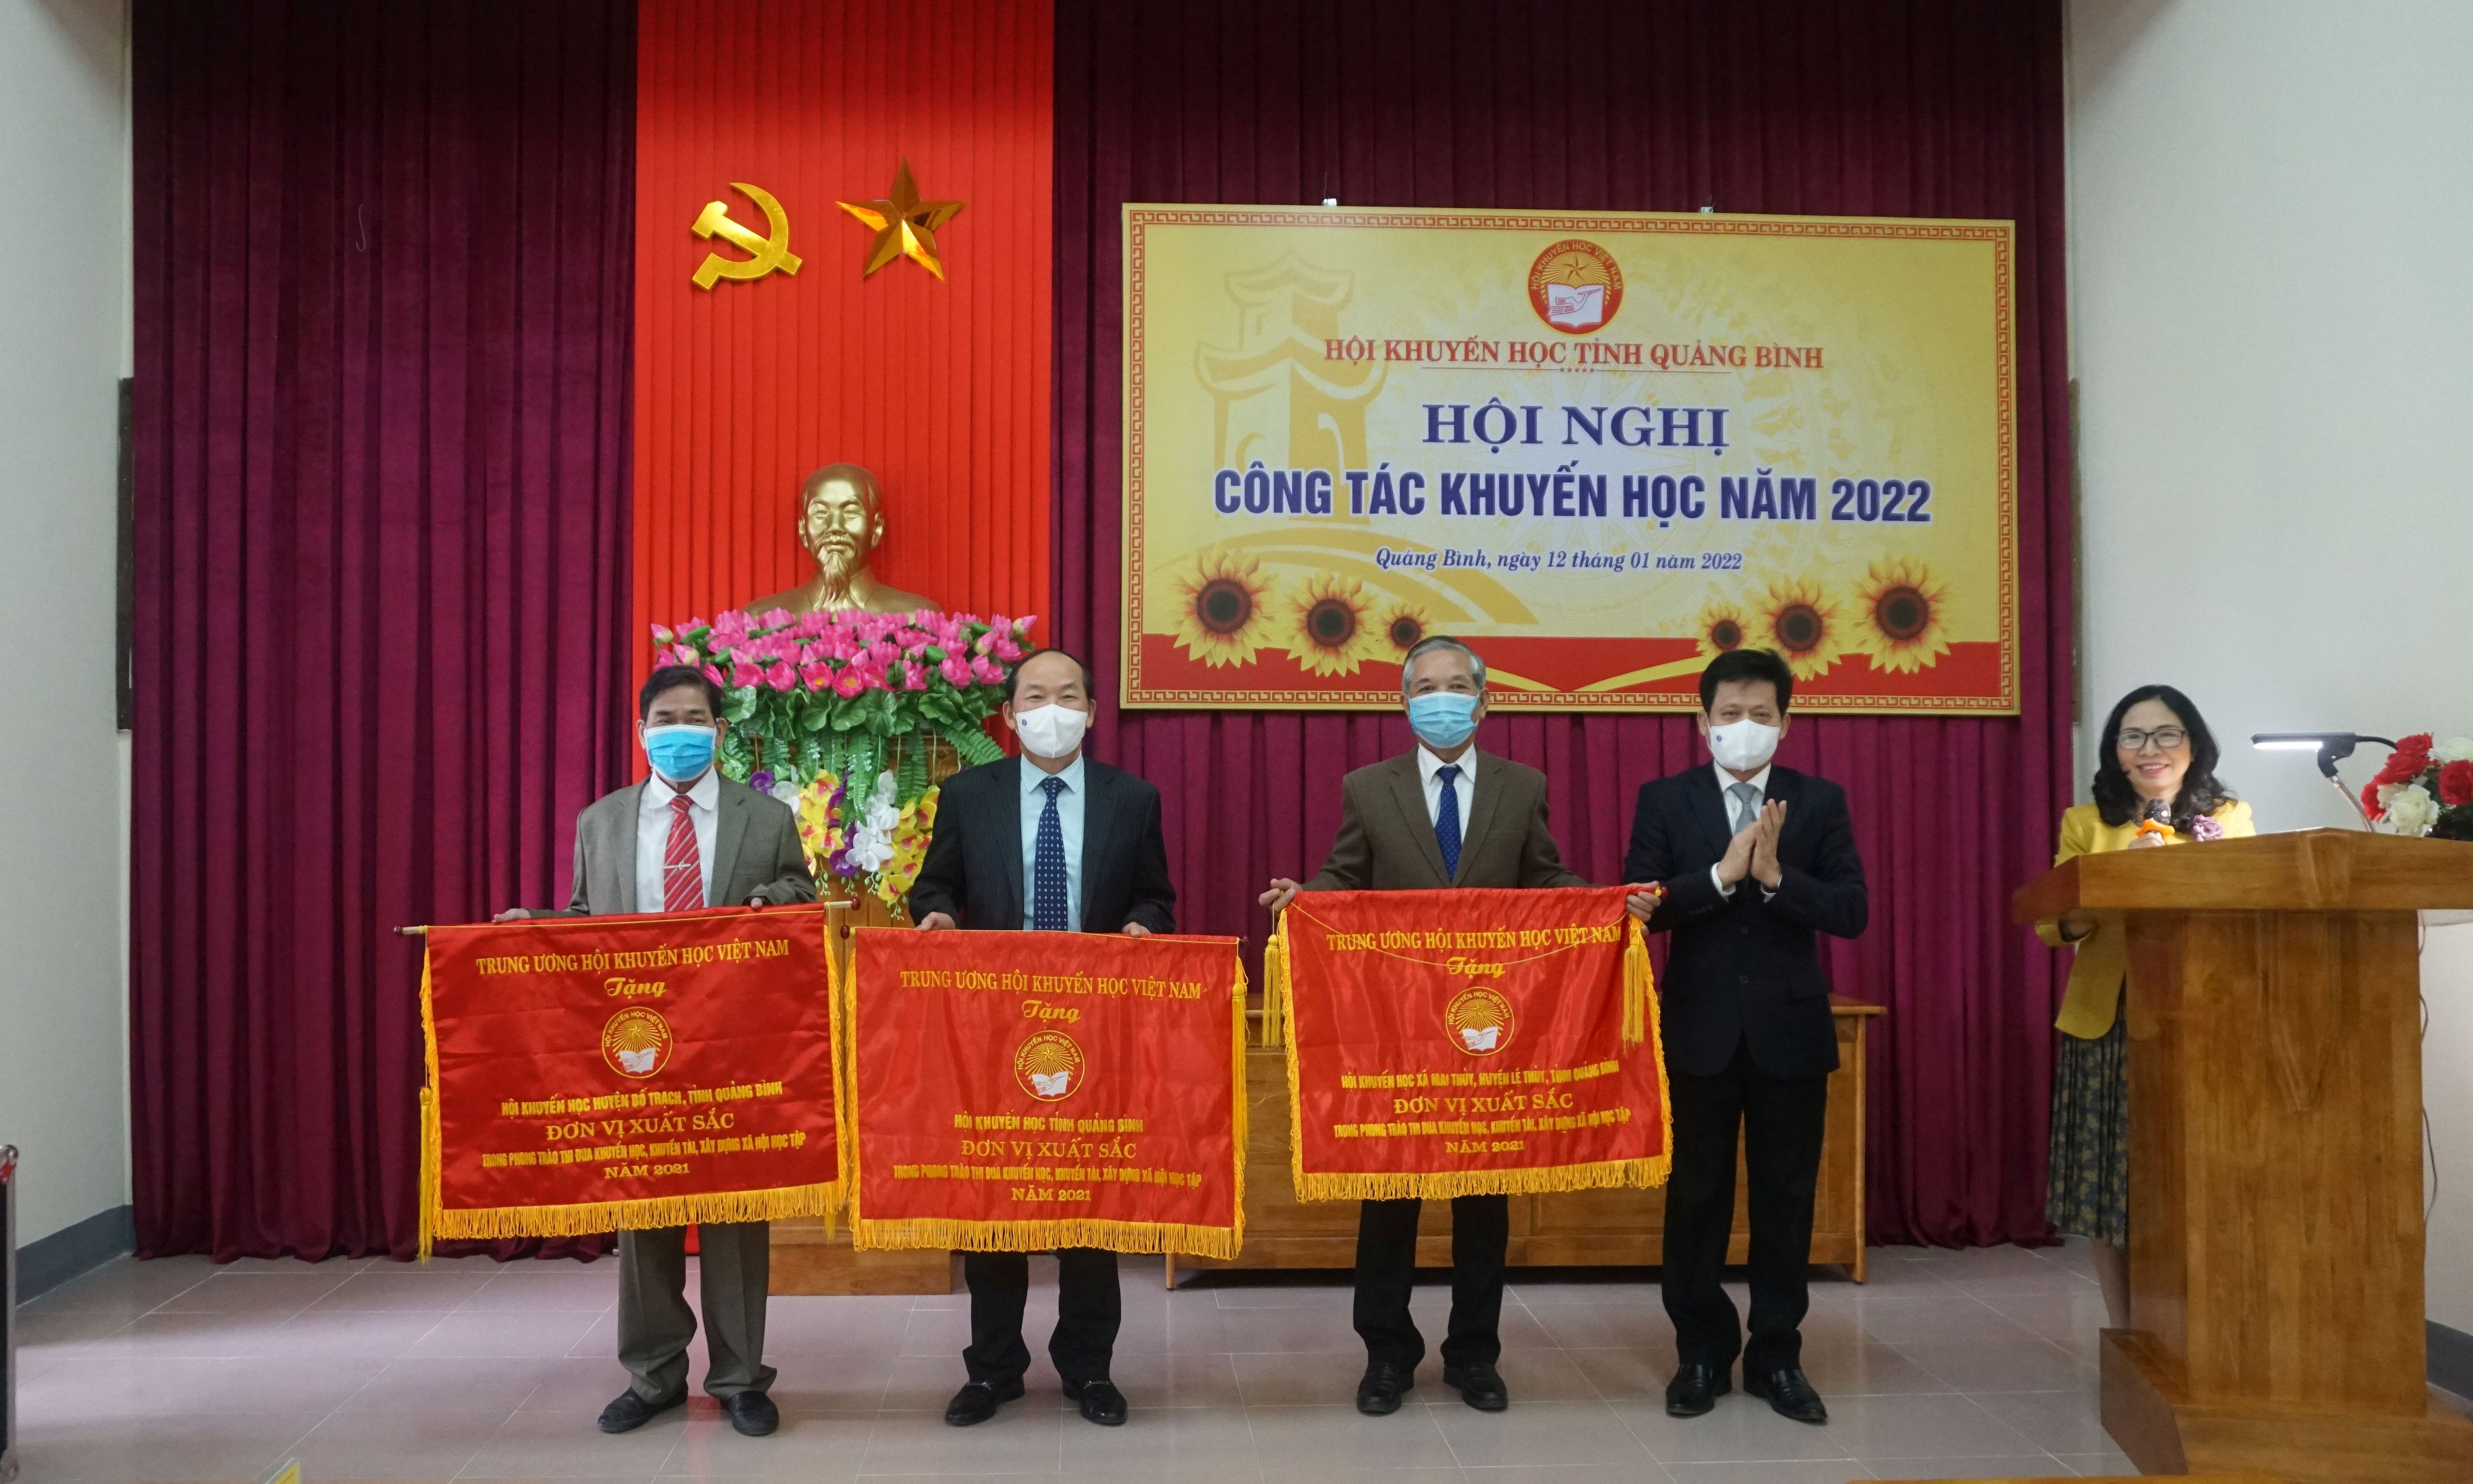 Đồng chí Lê Văn Bảo, Ủy viên Ban Thường vụ, Trưởng ban Dân vận Tỉnh ủy trao Cờ thi đua xuất sắc của Hội Khuyến học Việt Nam cho các tập thể.